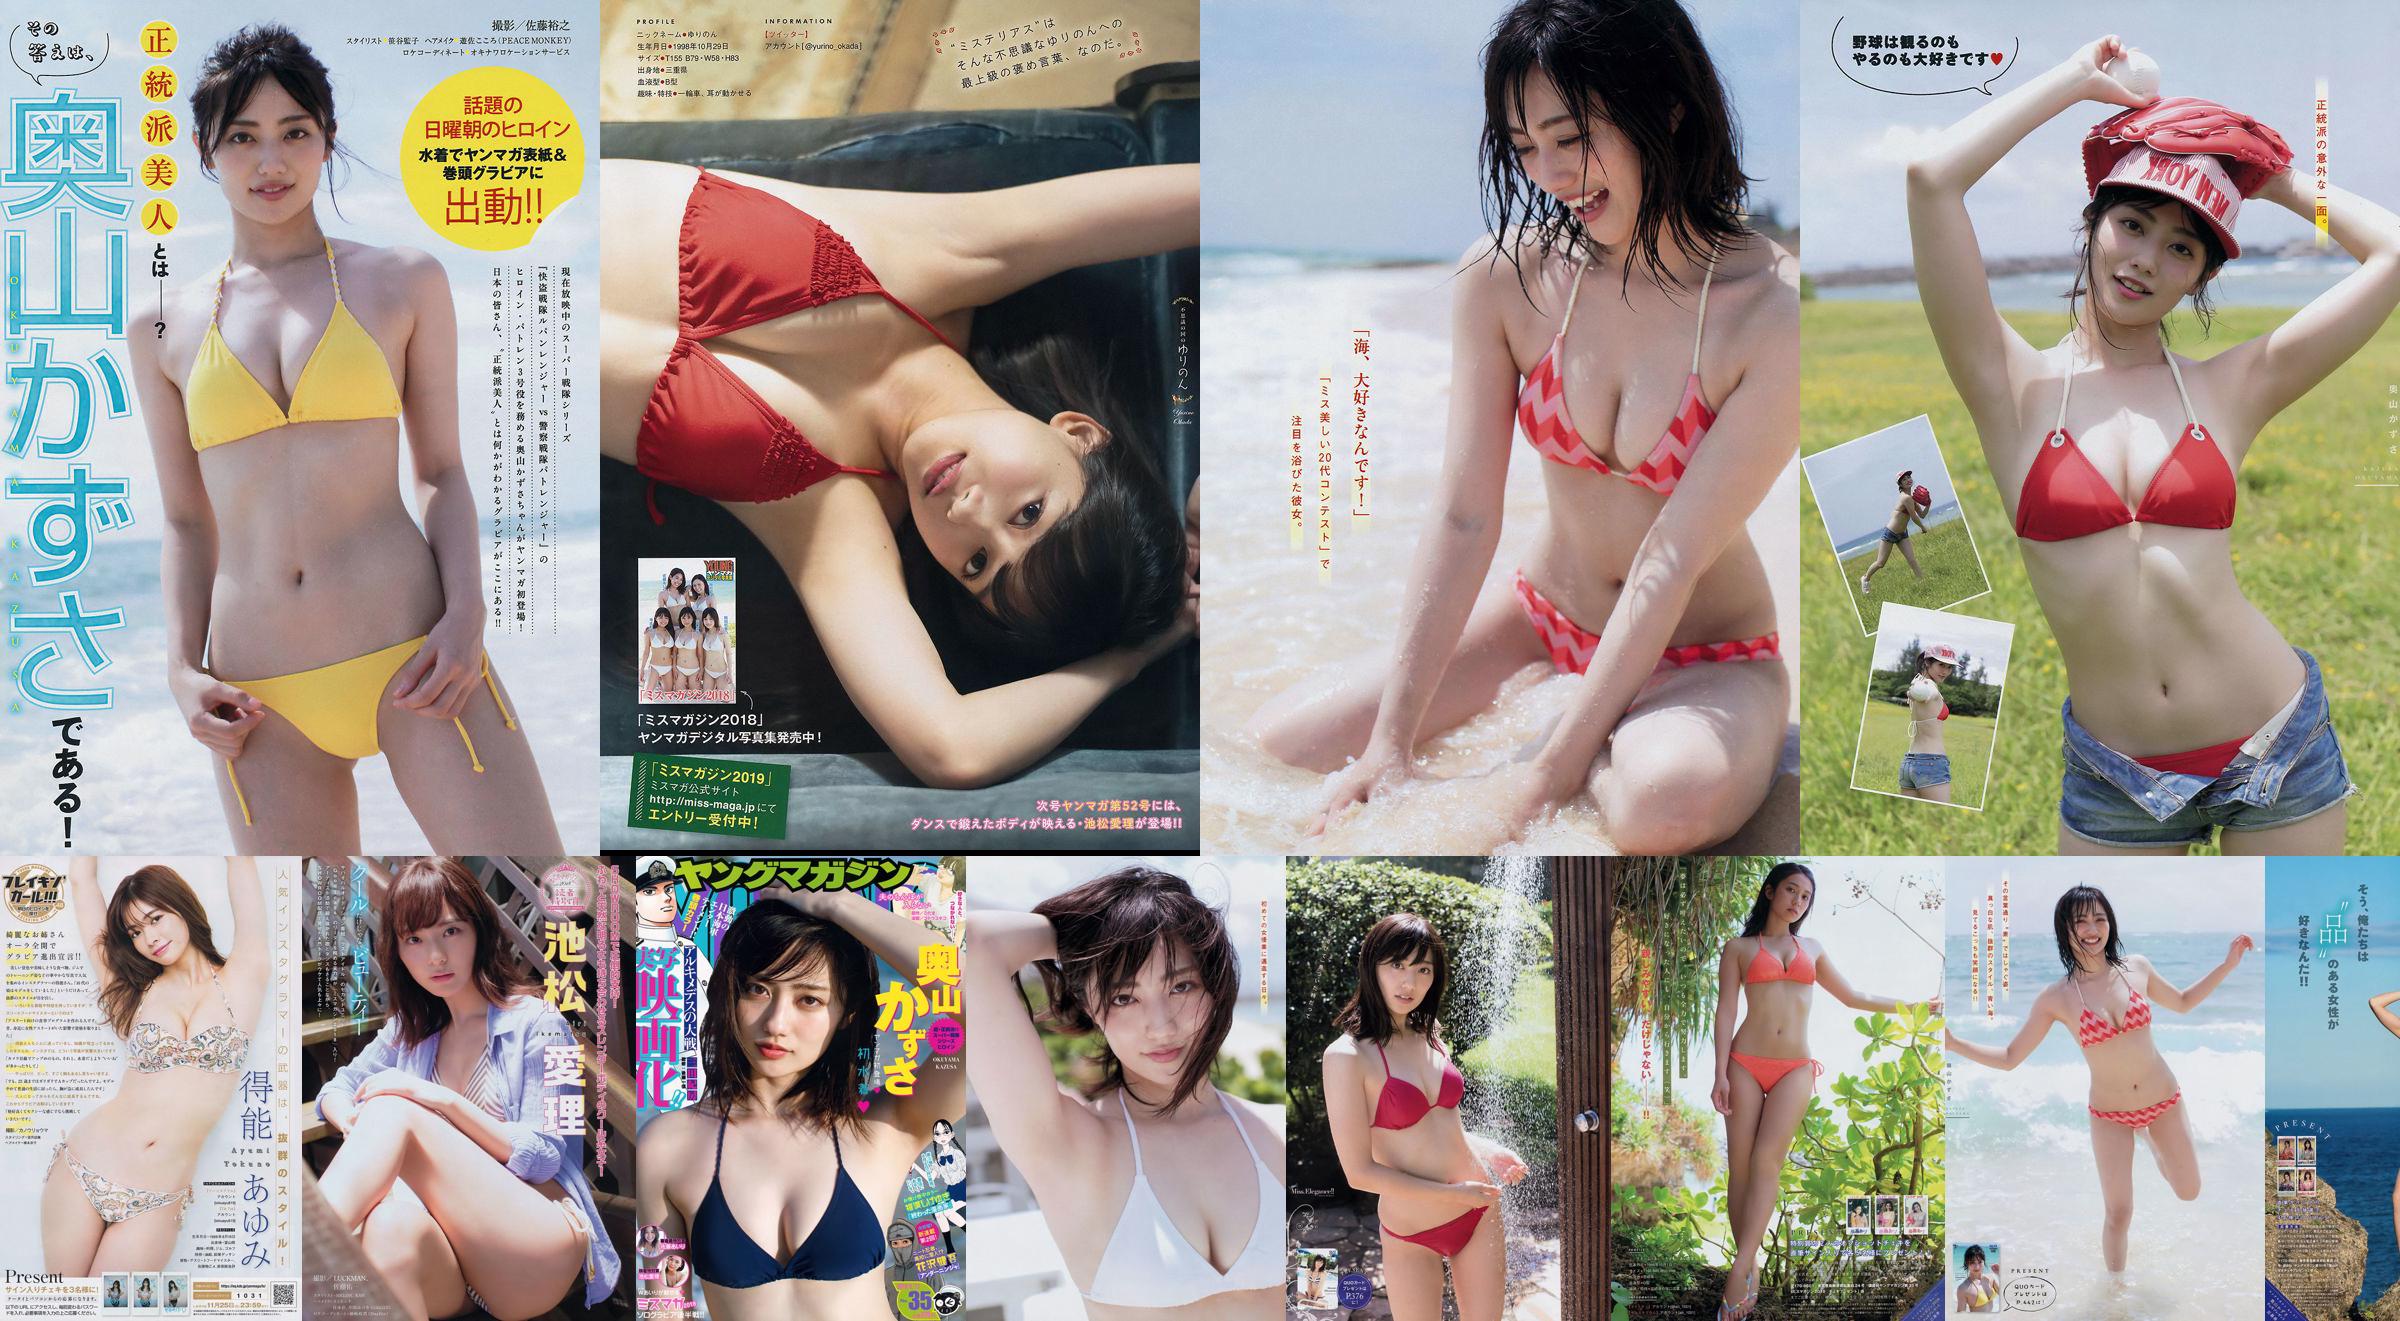 [Majalah Muda] Kazusa Okuyama Yurino Okada 2018 No. 51 Foto No.3d960f Halaman 1